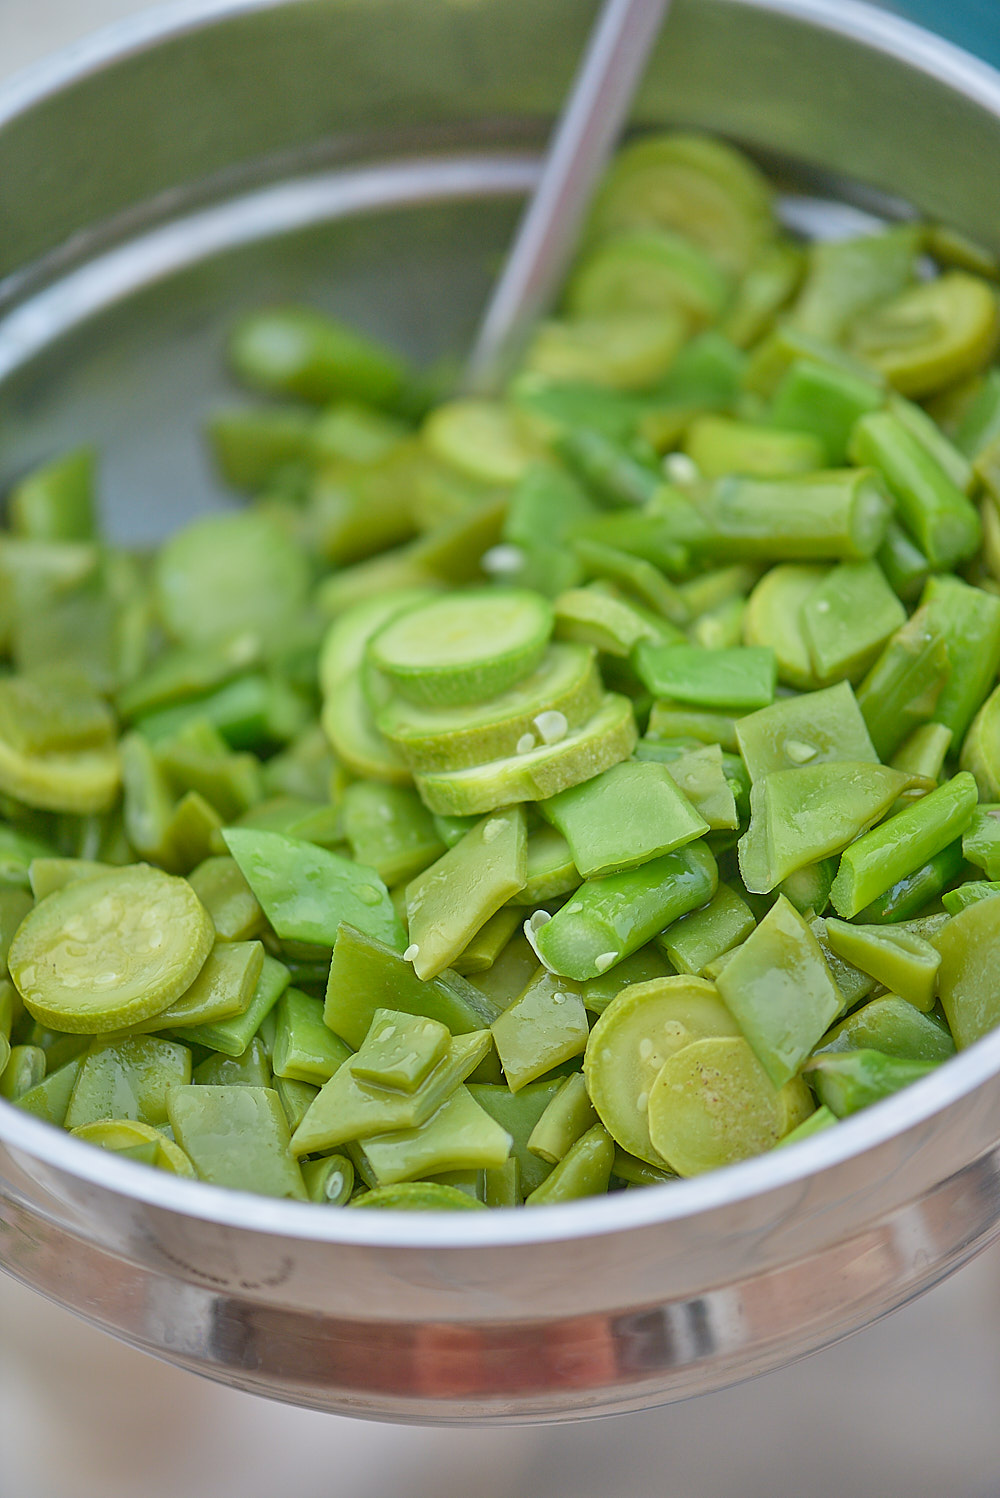 Photo culinaire de légumes verts cuits à la vapeur